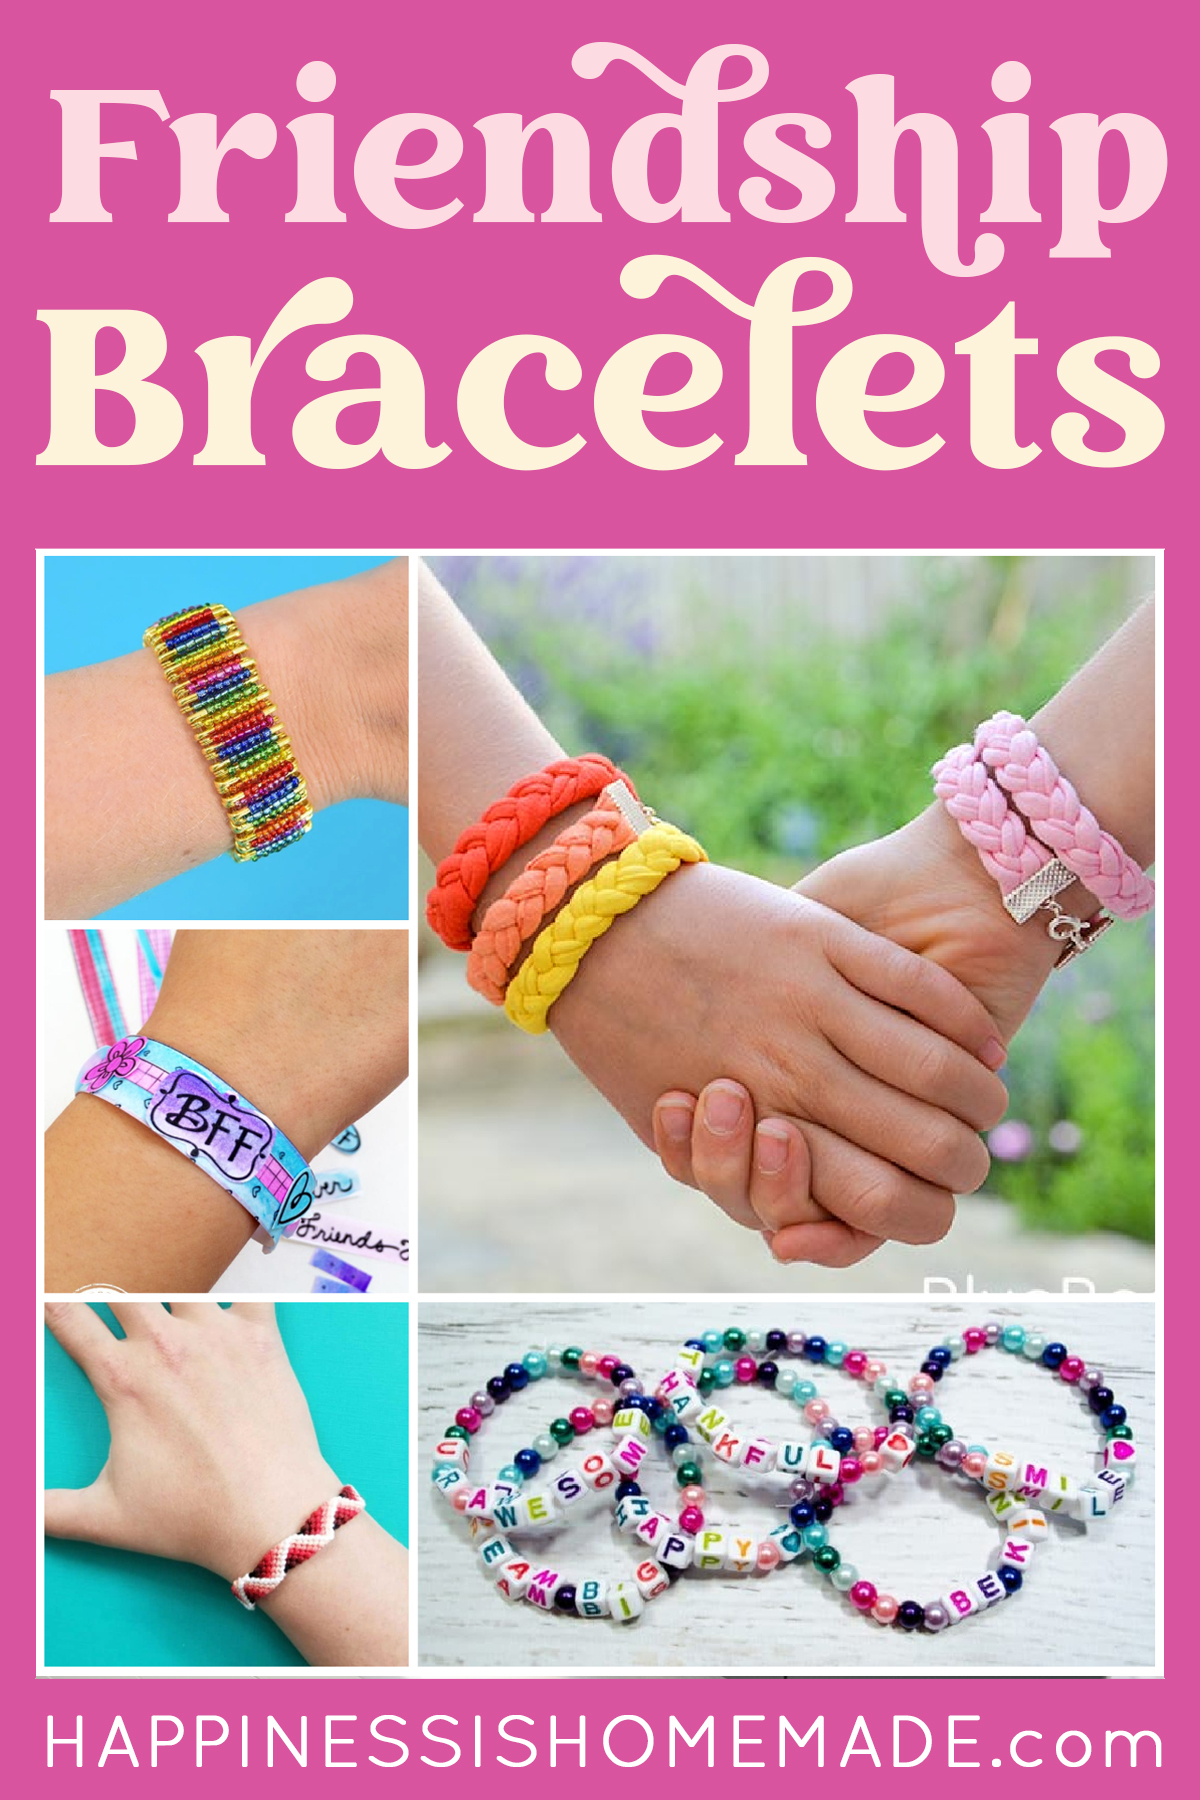 Practice Patterns by Making Bracelets